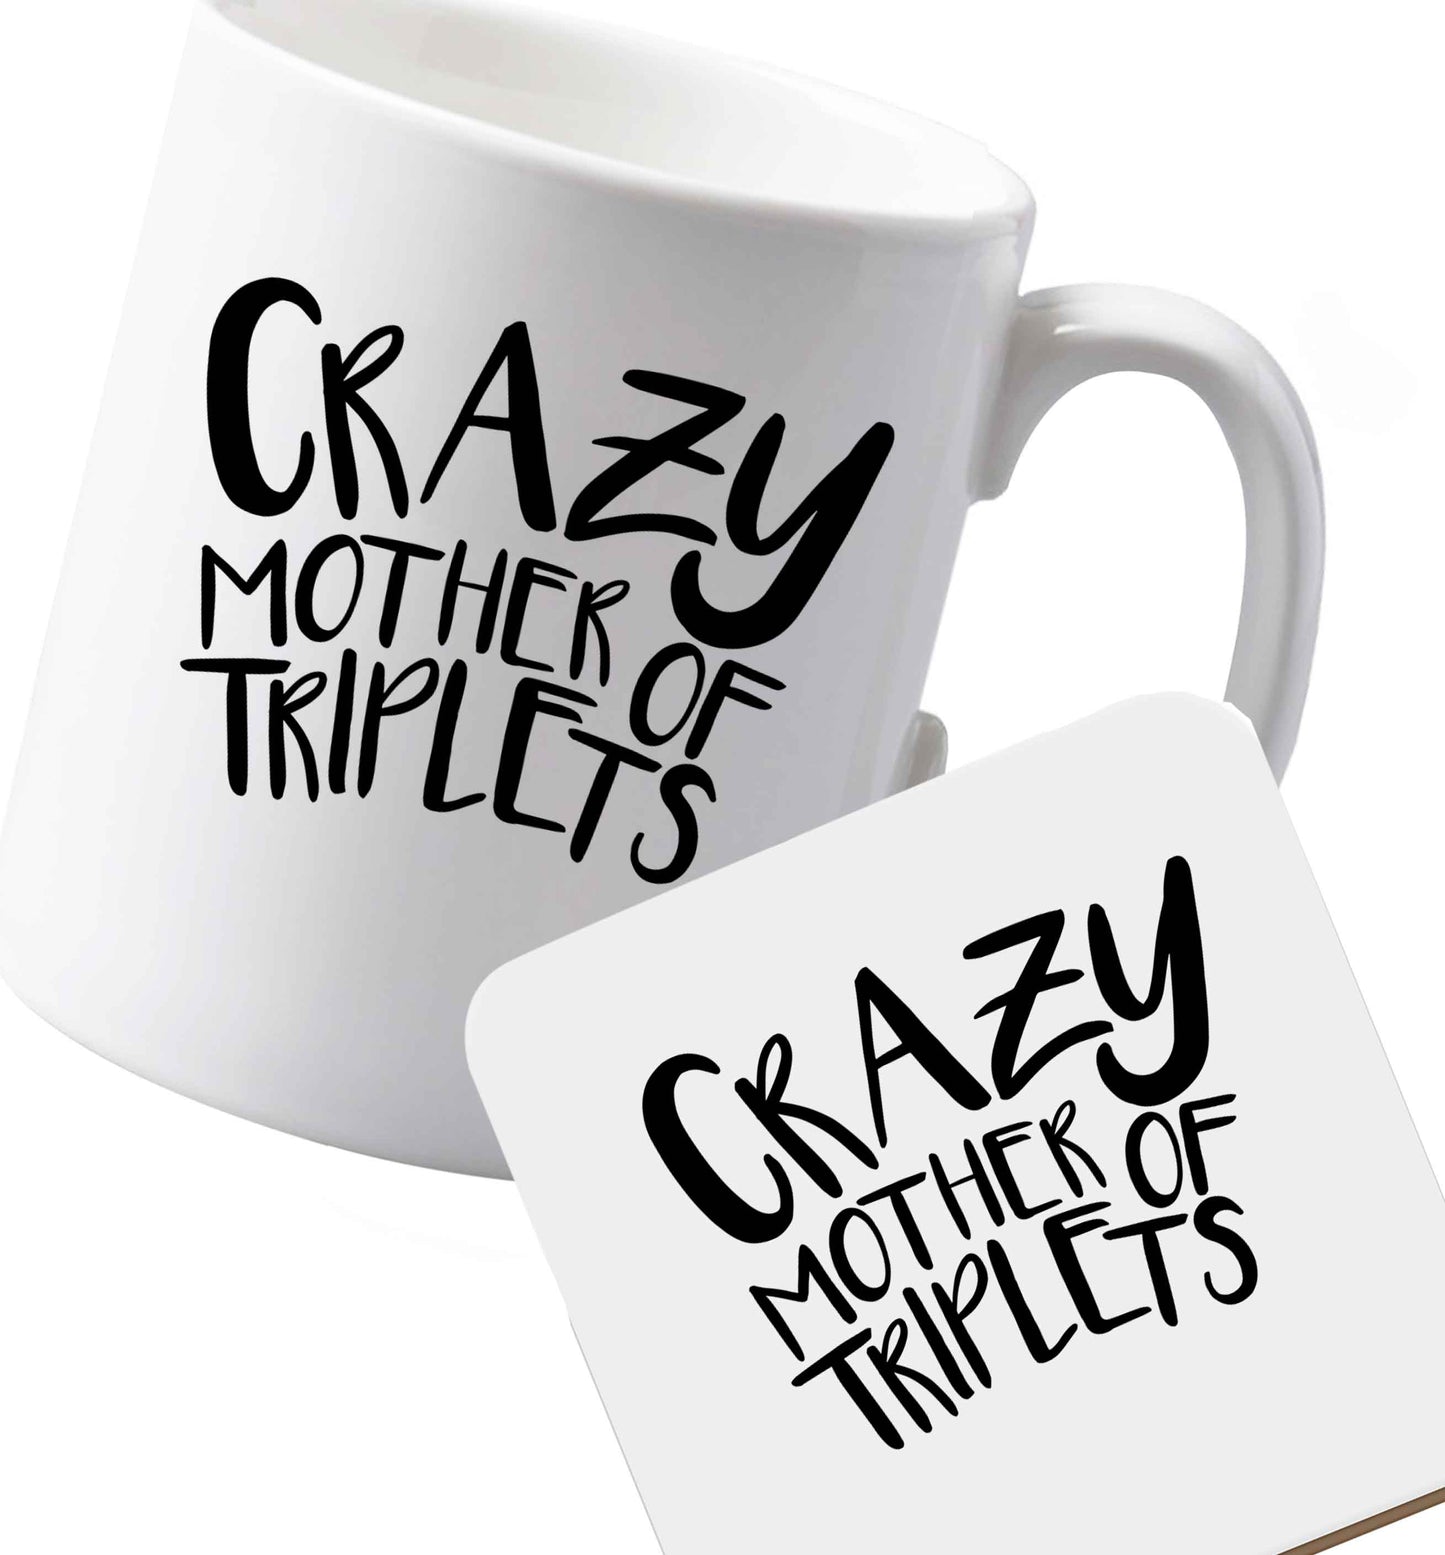 10 oz Ceramic mug and coaster Crazy mother of triplets both sides